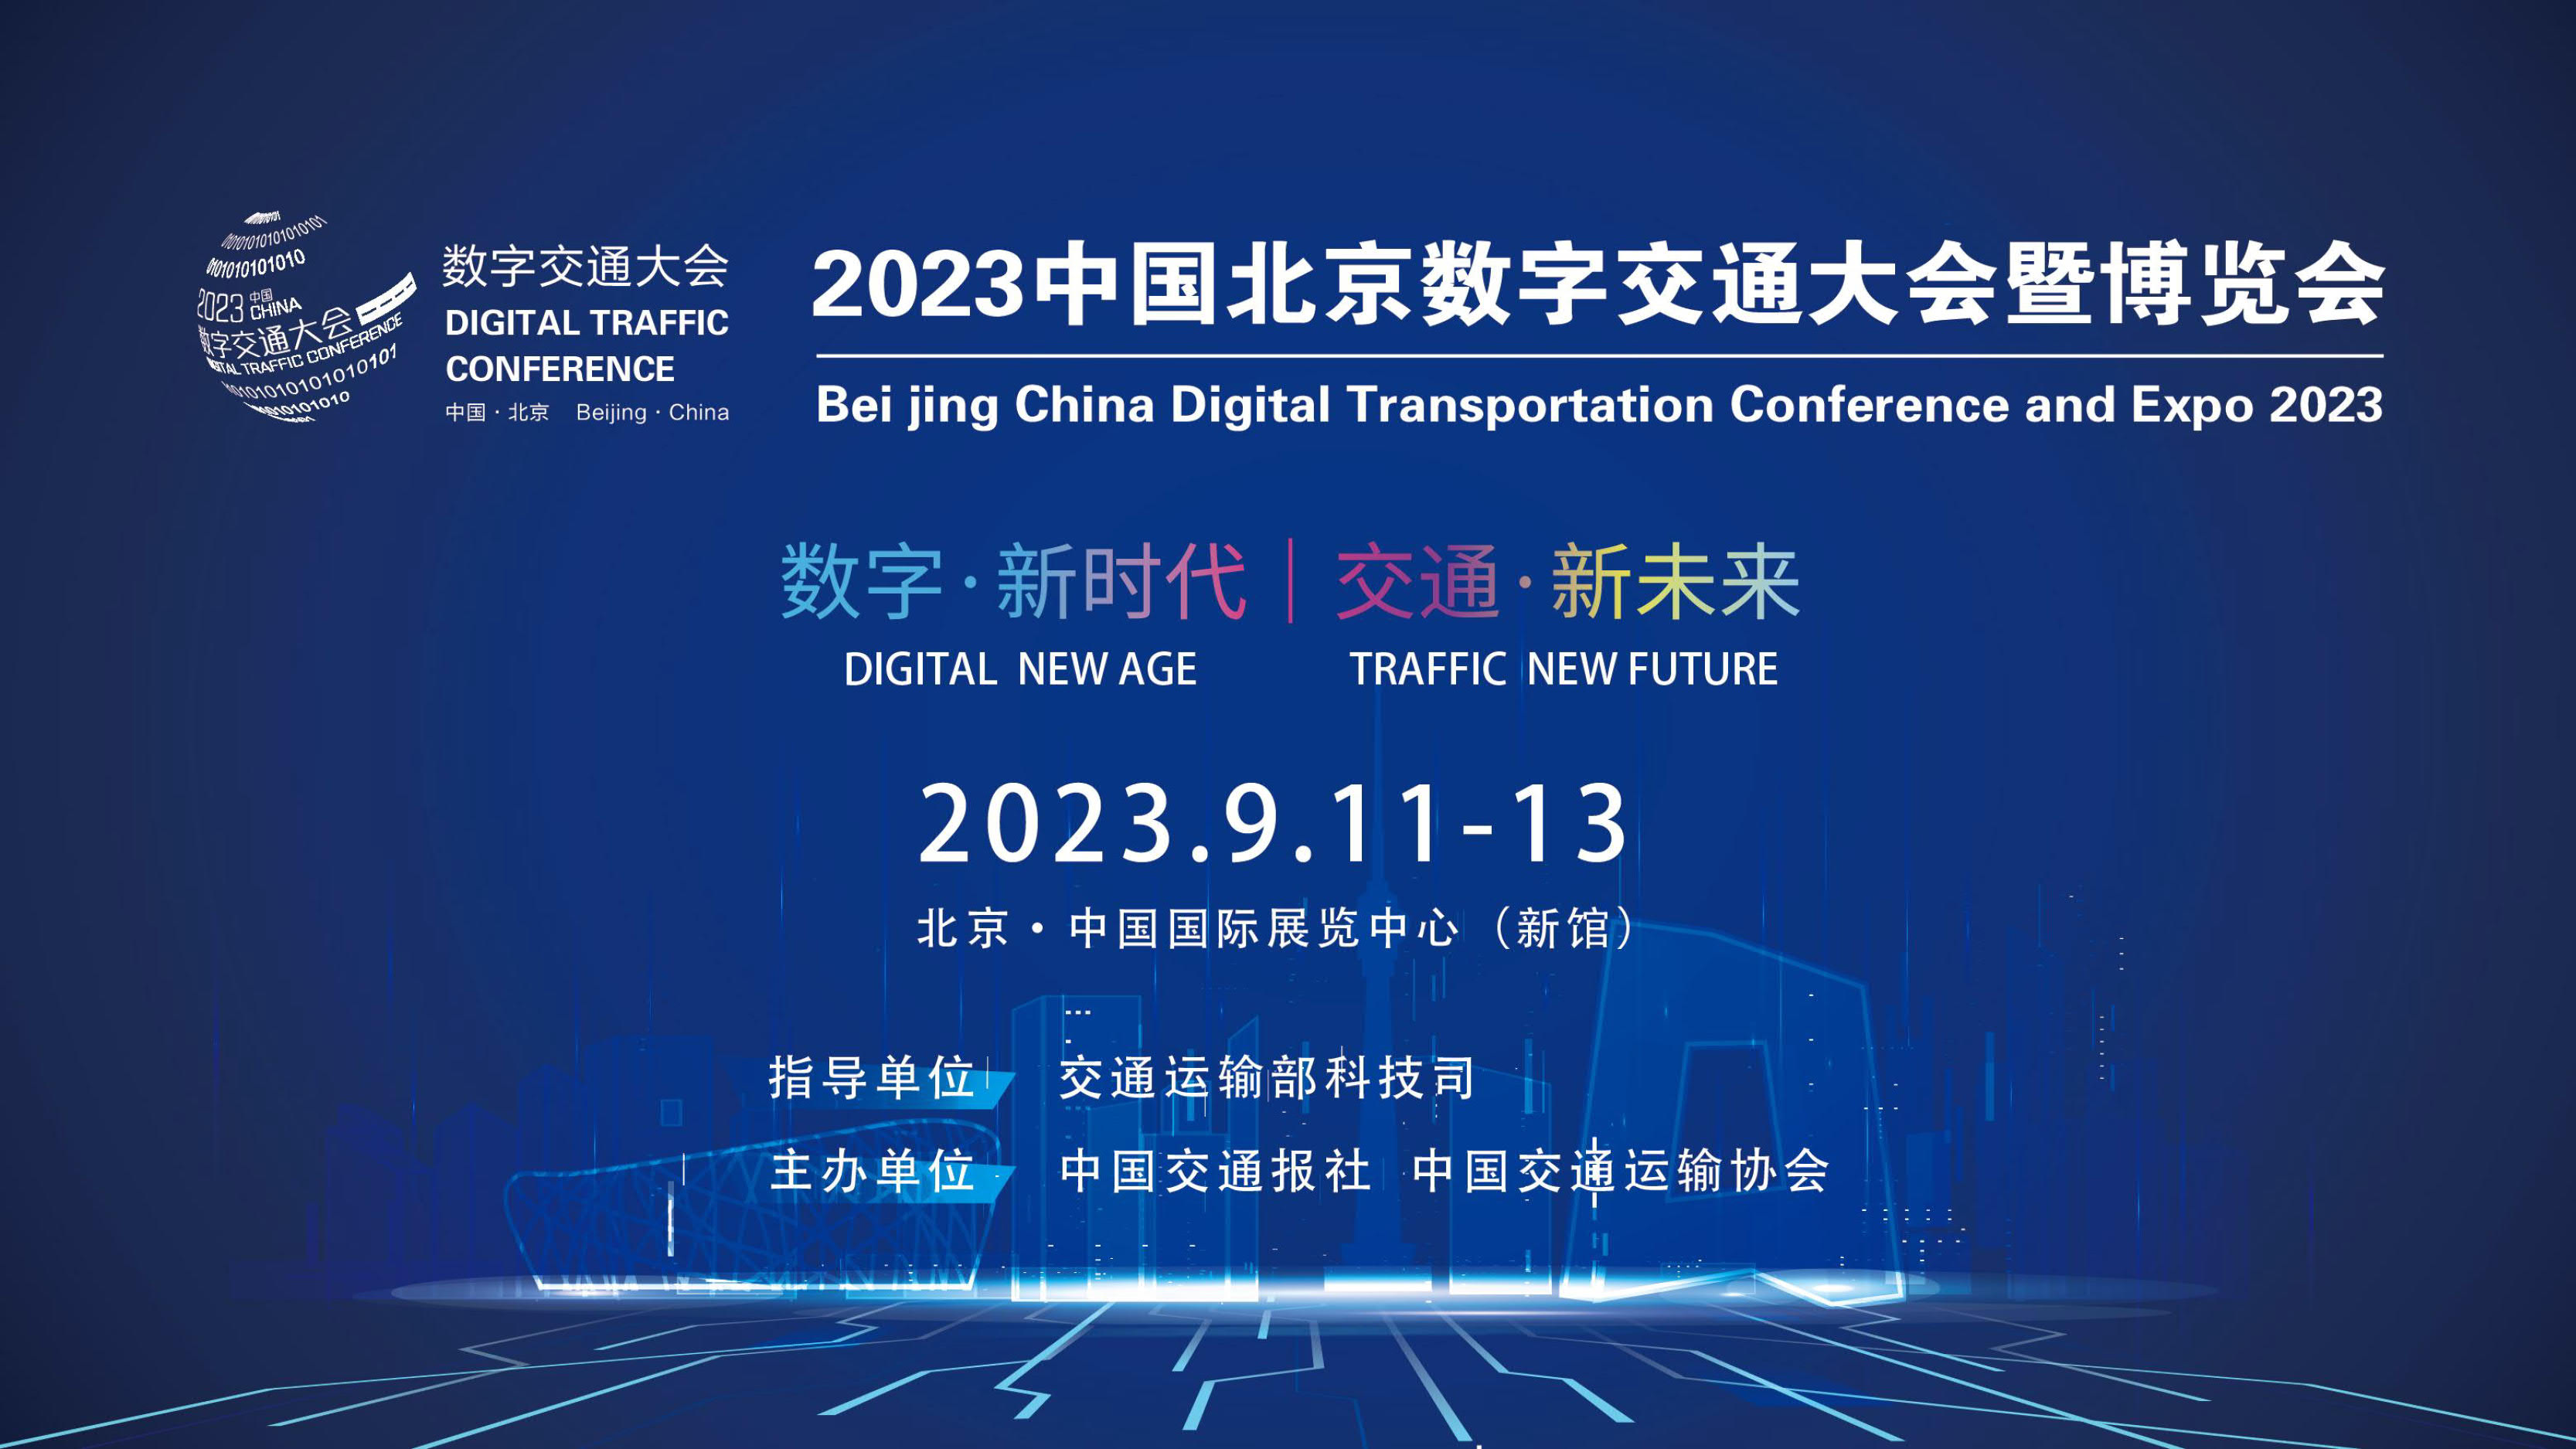 2023中国北京数字交通大会暨博览会